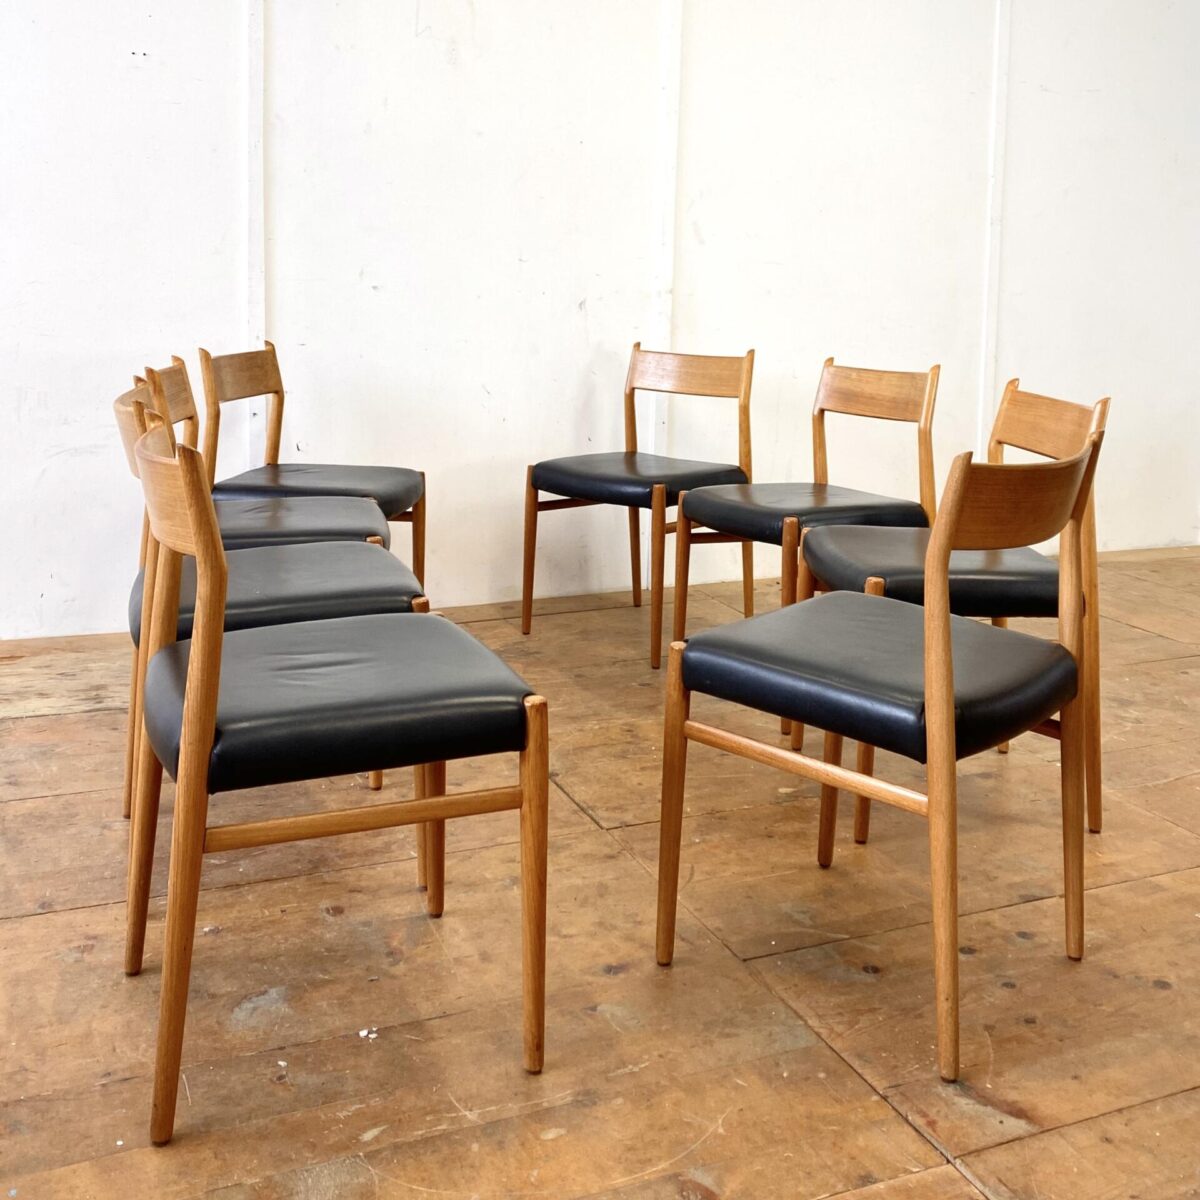 Deuxieme.shop midcentury teak Dinningchairs. Denmark. 8 Schlichte Skandinavische Teakstühle mit Leder Sitzfläche. Die Stühle werden im 4er oder 8er Set verkauft. Die Stühle sind gebraucht, wurden vor ca. 8 Jahren mit schwarzem Leder neu bezogen. 